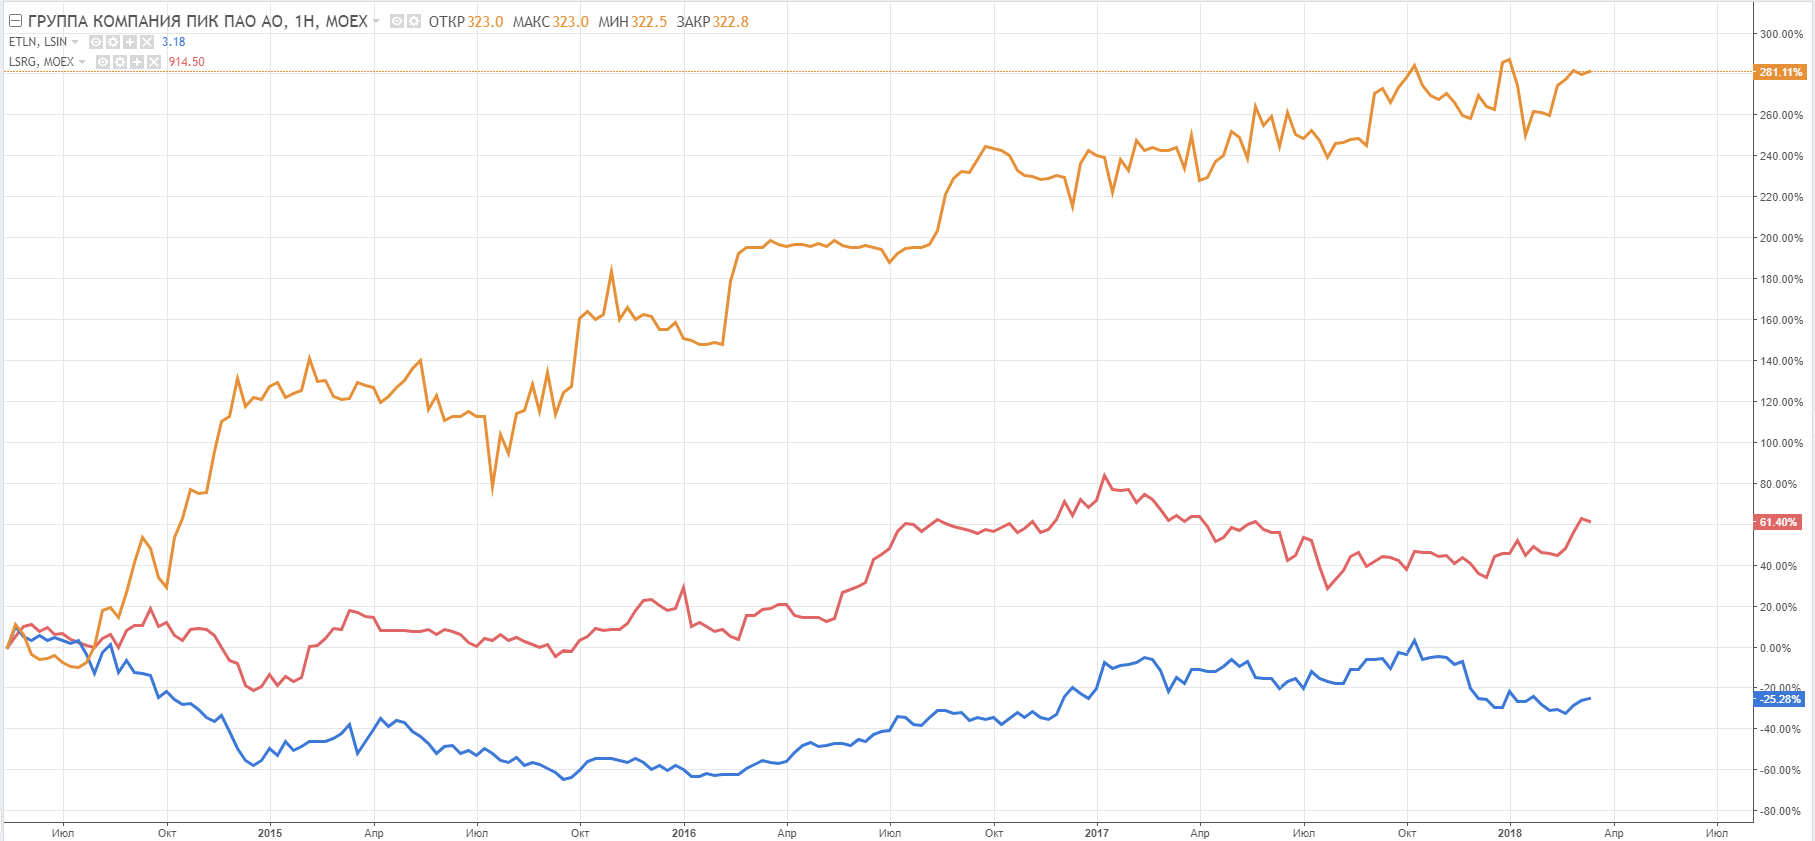 Сравнительный график динамики цен акций и расписок застройщиков, недельный таймфрейм, Эталон (синяя линия), ЛРС (розовая линия), ПИК (оранжевая линия) 